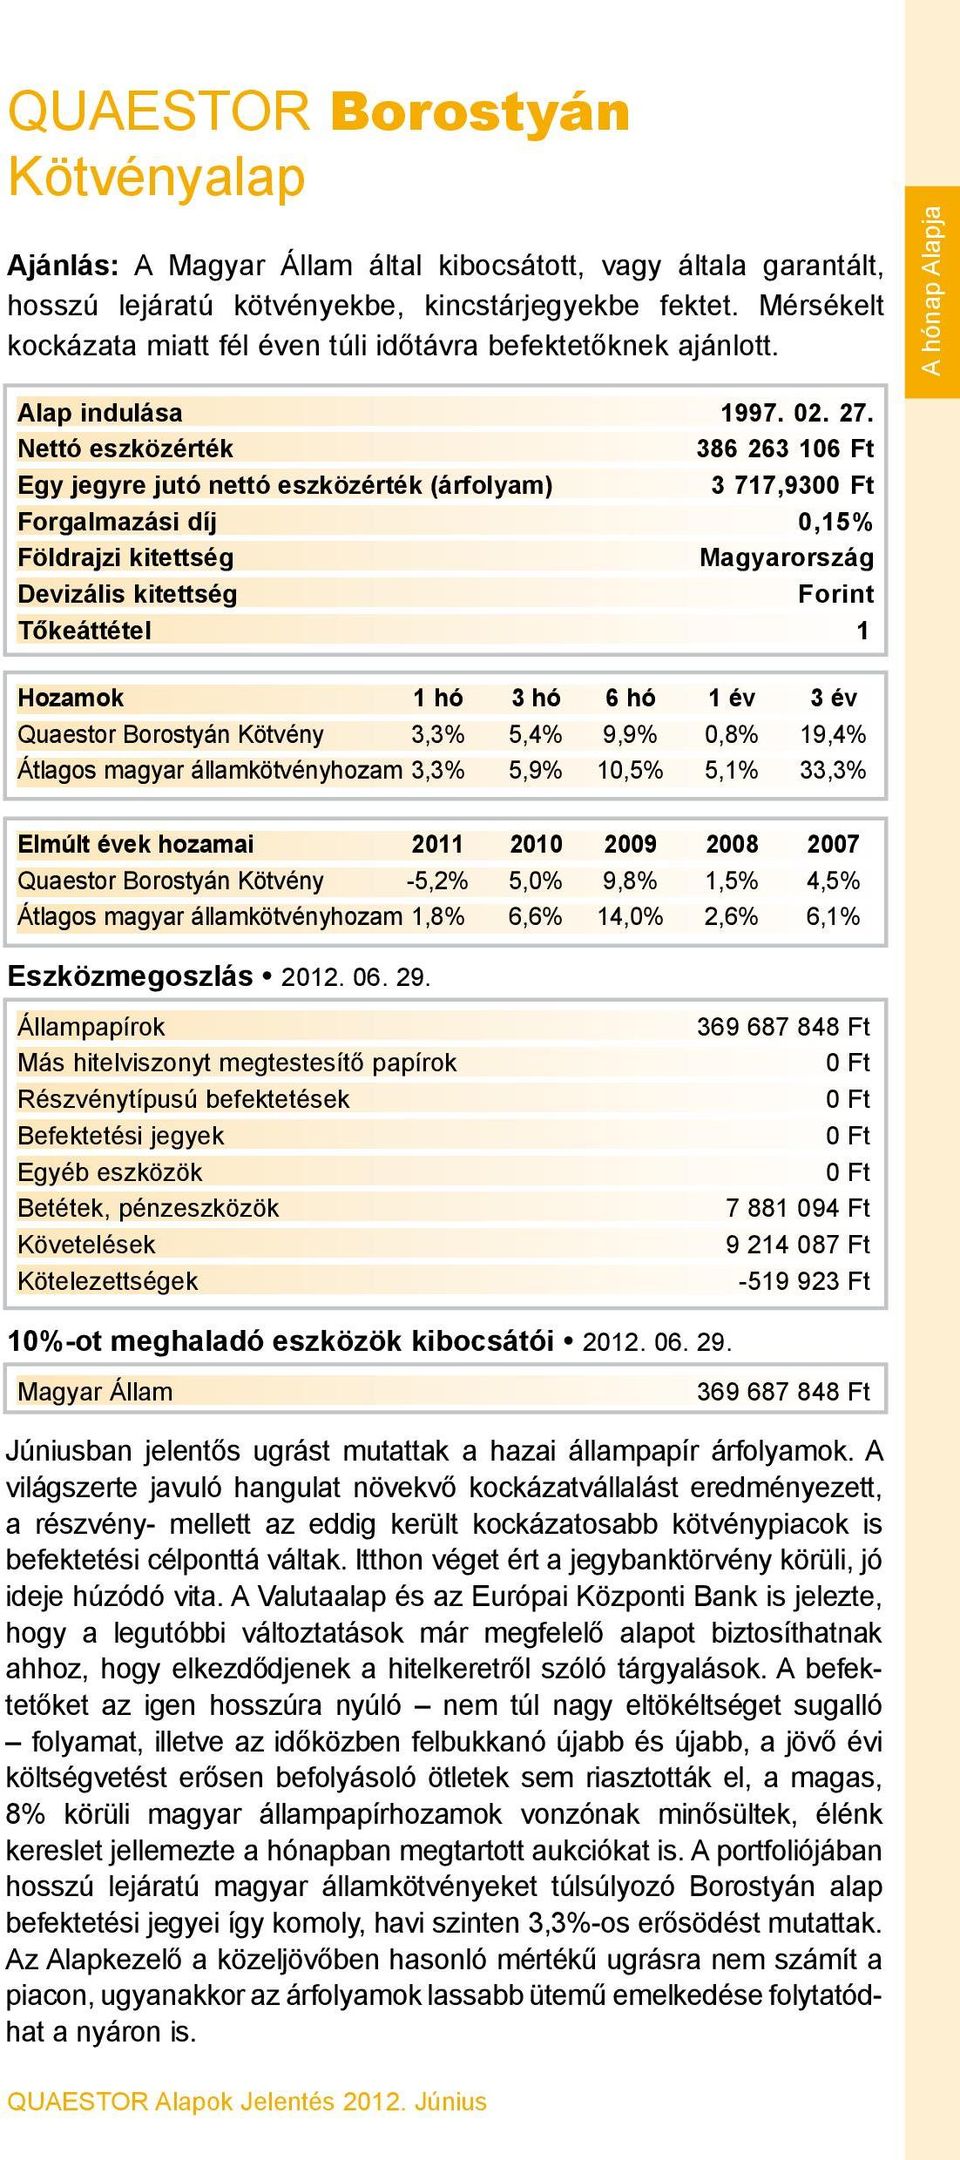 386 263 106 Ft 3 717,930 Forgalmazási díj 0,15% Magyarország Forint Quaestor Borostyán Kötvény 3,3% 5,4% 9,9% 0,8% 19,4% Átlagos magyar államkötvényhozam 3,3% 5,9% 10,5% 5,1% 33,3% Quaestor Borostyán